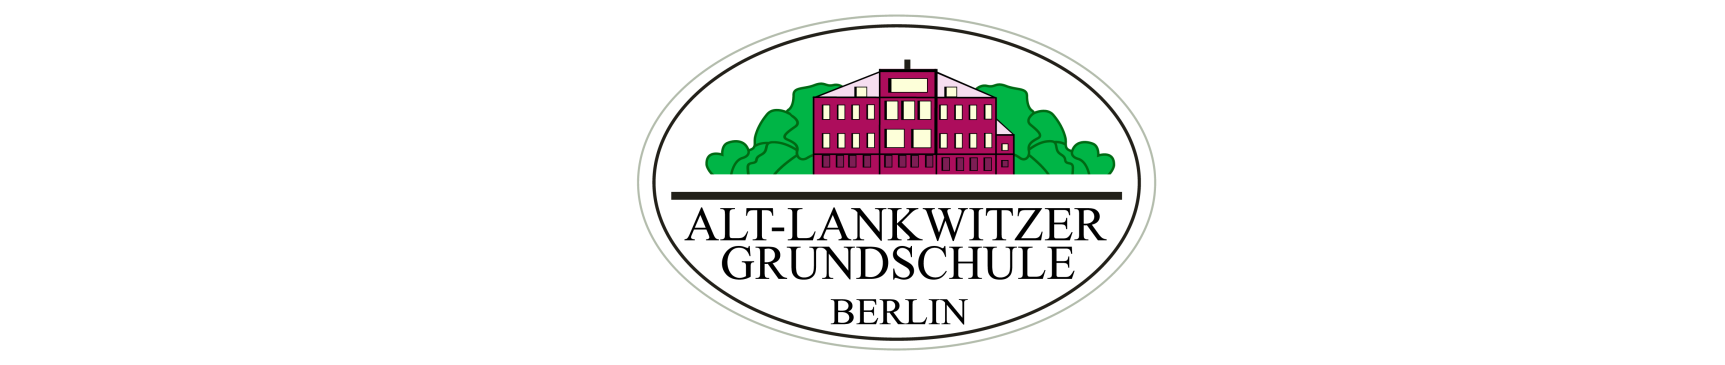 Alt-Lankwitzer Grundschule